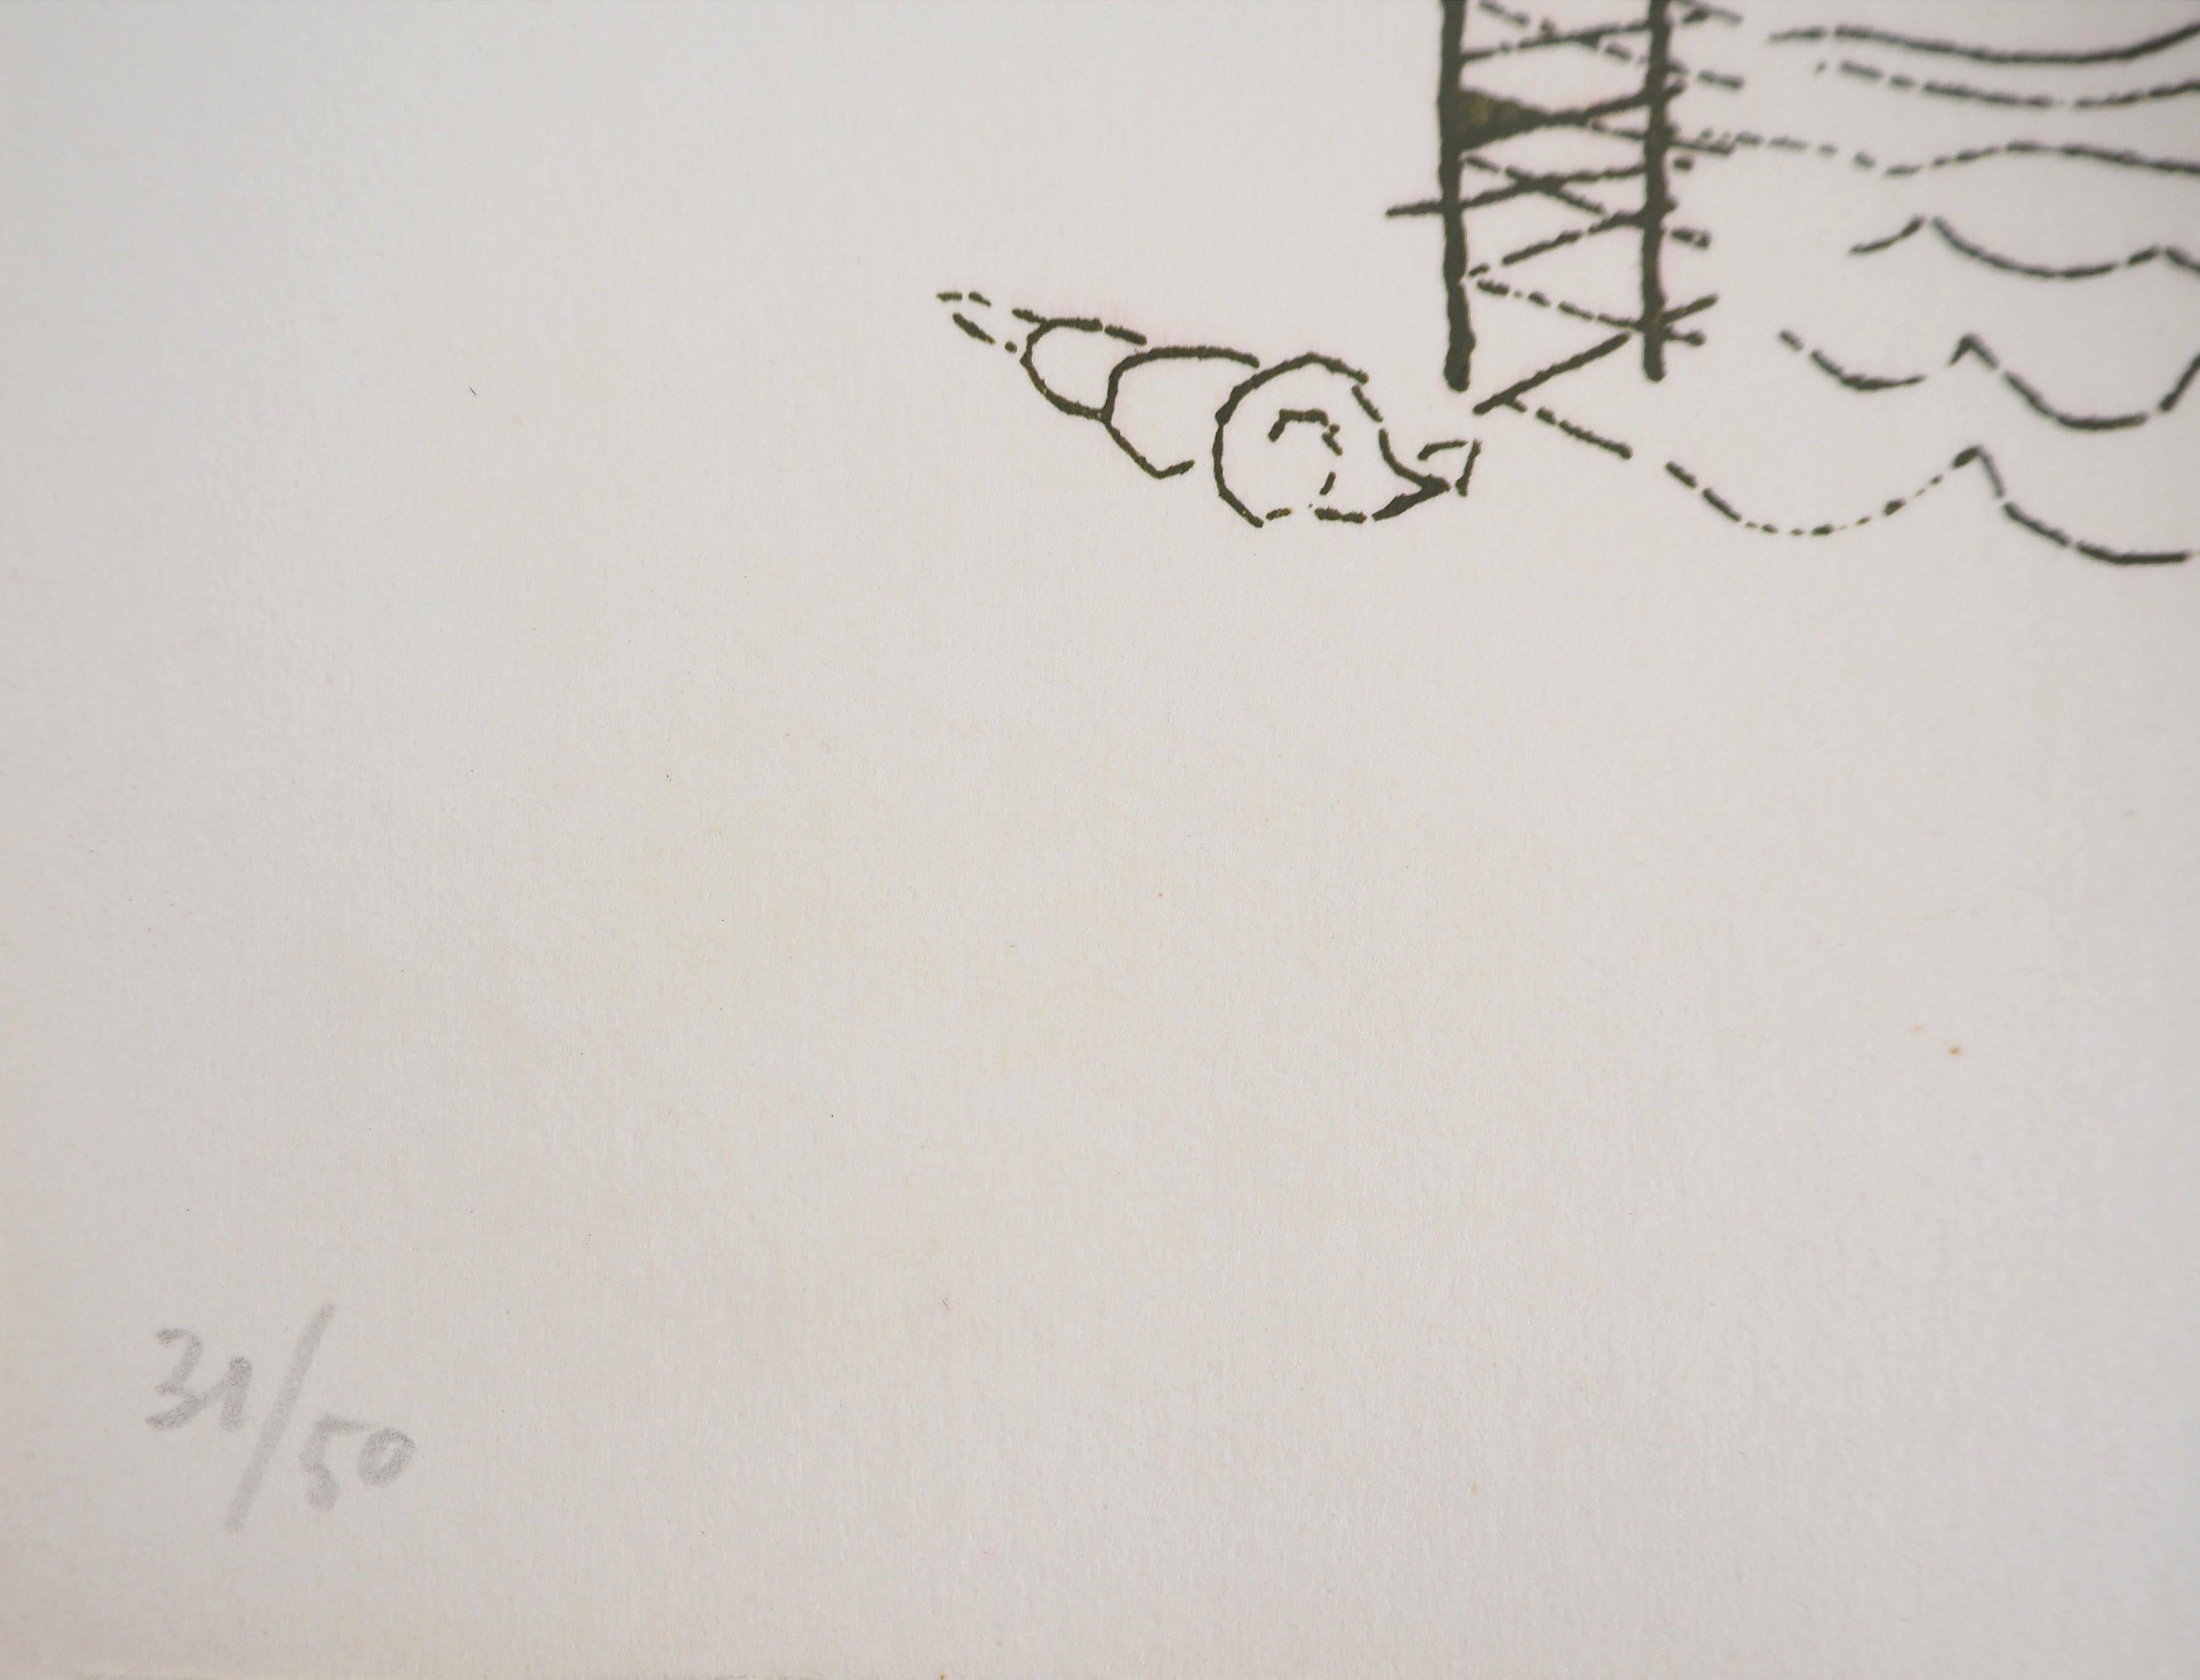 Man Ray (Emmanuel Radnitsky, alias)
Fleurs surréalistes, Hélène, 1969

Gravure originale signée 
Signature également imprimée dans la plaque
Sur vélin, 23 x 17 cm (c. 9 x 6,6 inch)
Numéroté /50 exemplaires

INFORMATIONS :  Cette gravure fait partie